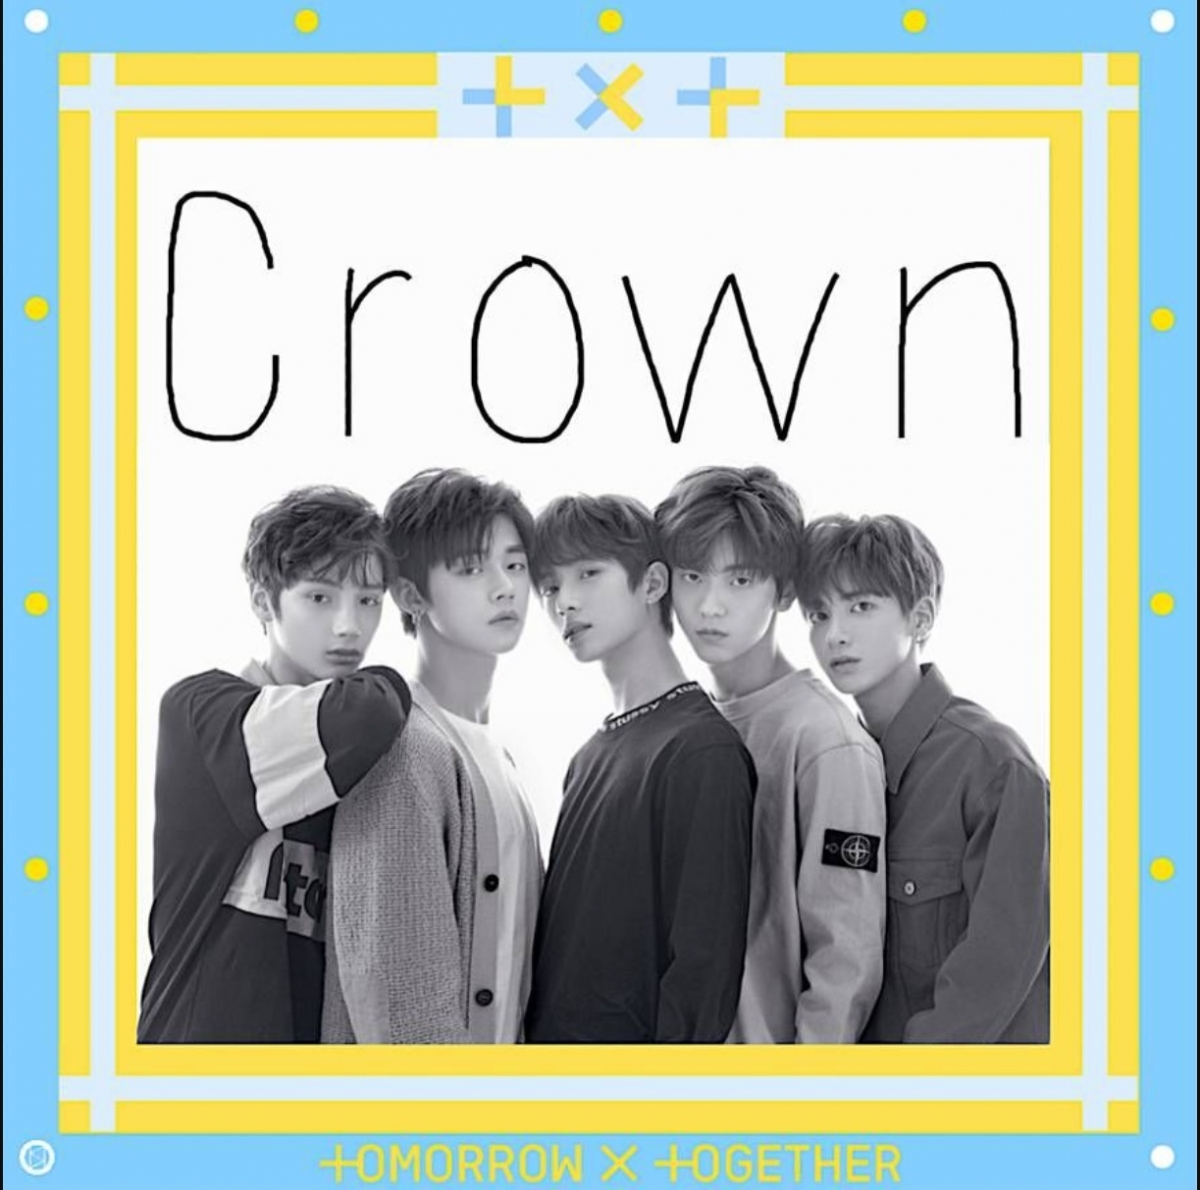 Ca khúc "Crown" đã giúp TXT có được 1 khởi đầu vô cùng thuận lợi